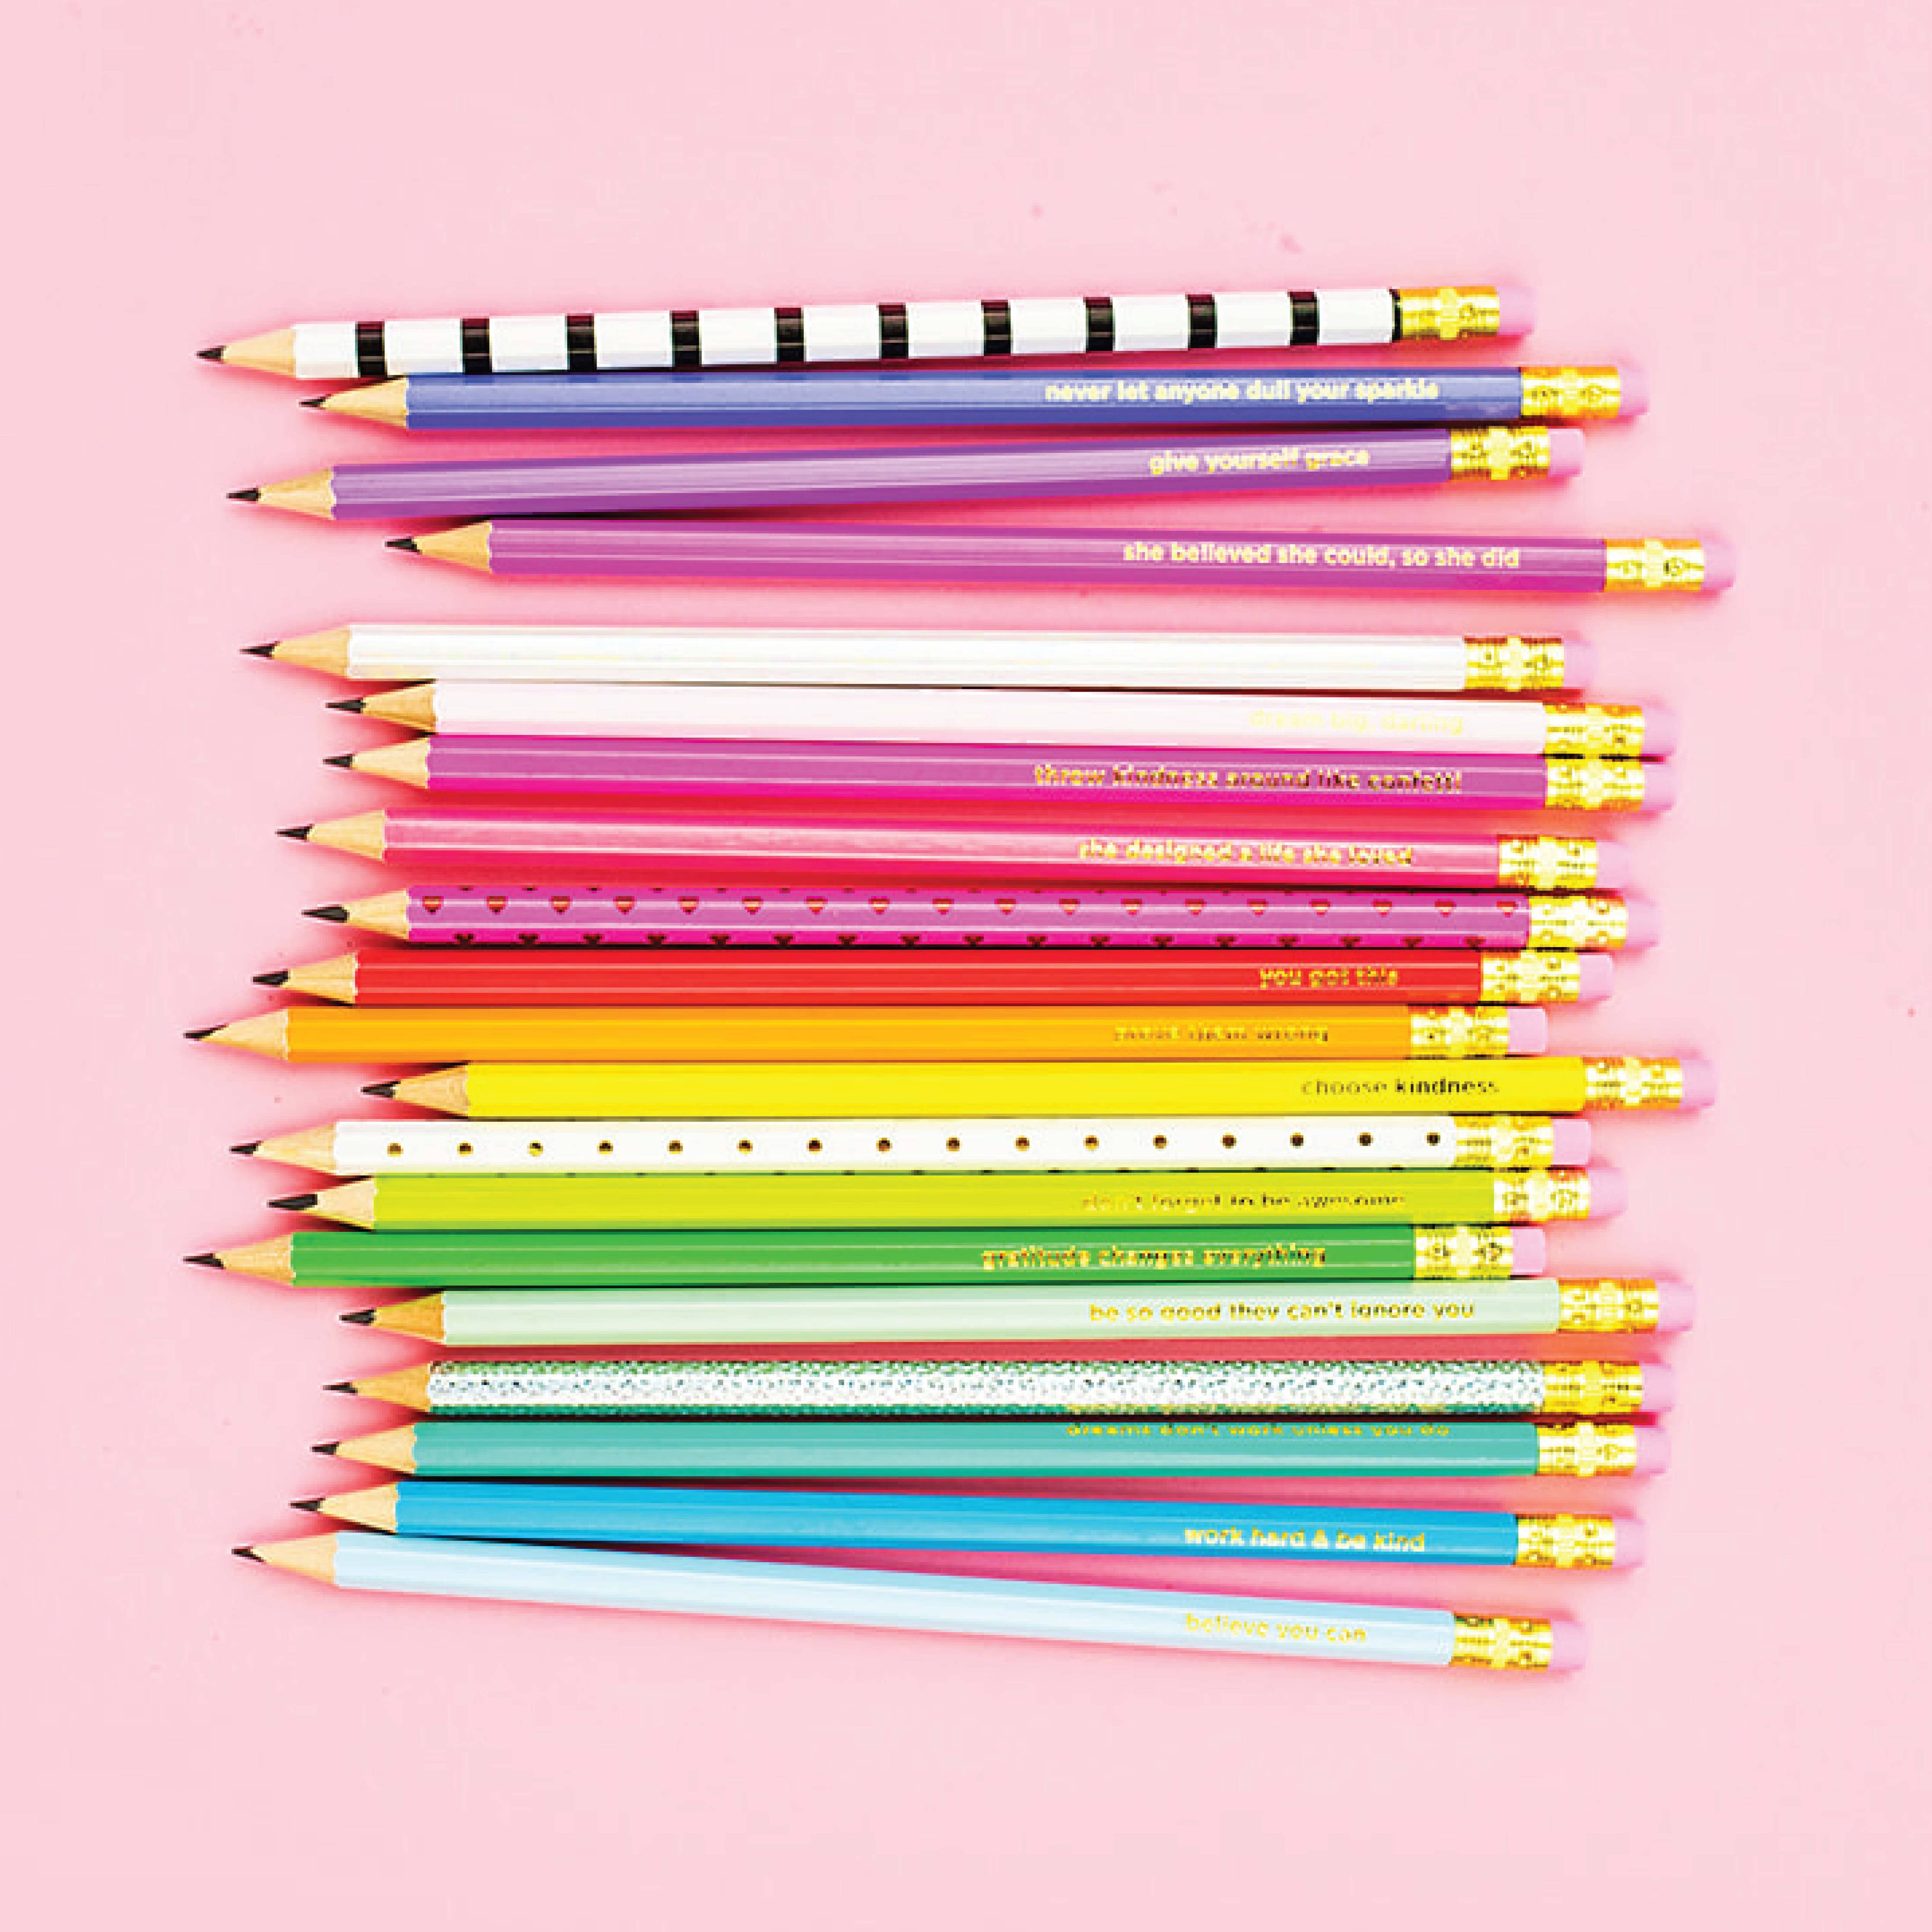 Motivational Pencil Set - 20 Pencils